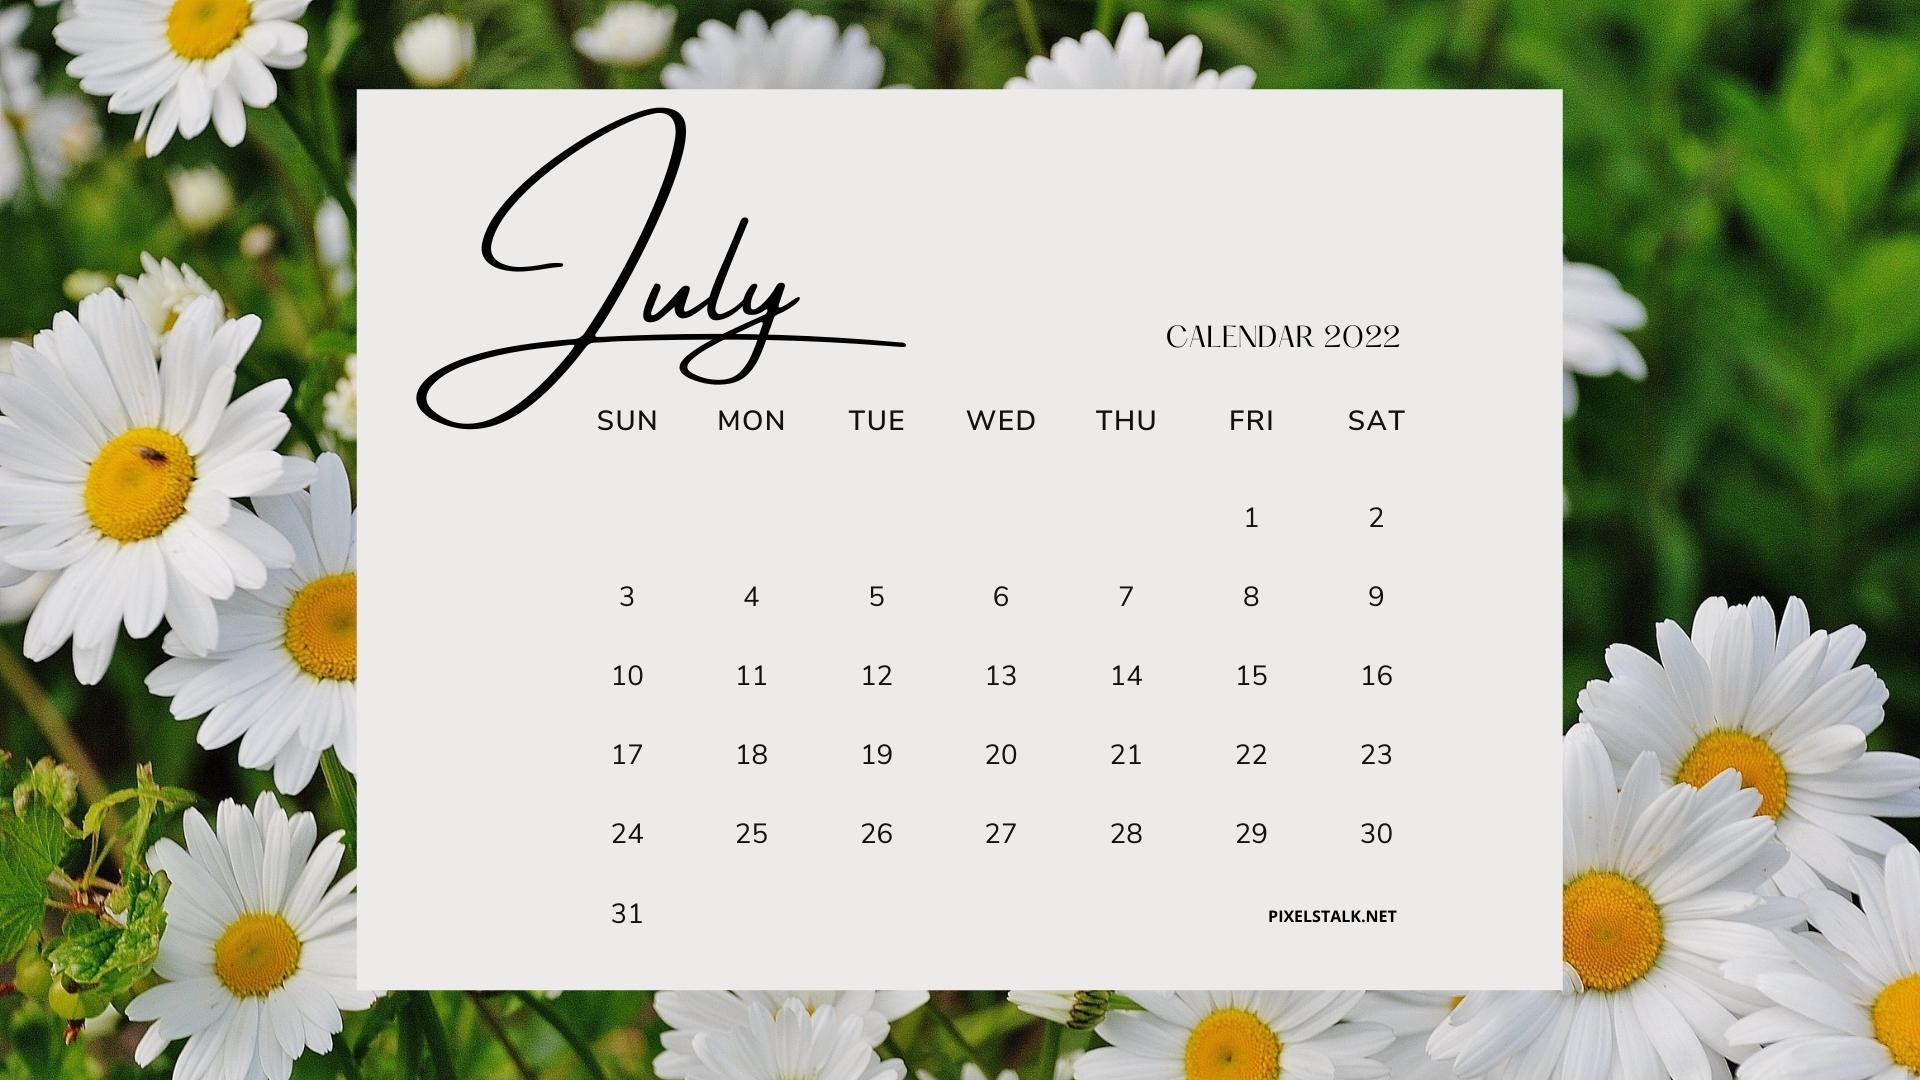 Lịch tháng 7 năm 2022 hình nền: Tháng 7 là thời điểm hoàn hảo để tận hưởng những ngày nghỉ hè nóng bức với gia đình và bạn bè. Lịch tháng 7 với hình nền đẹp và sáng tạo, giúp bạn lên kế hoạch các chuyến đi hay những hoạt động thú vị trong mùa hè.